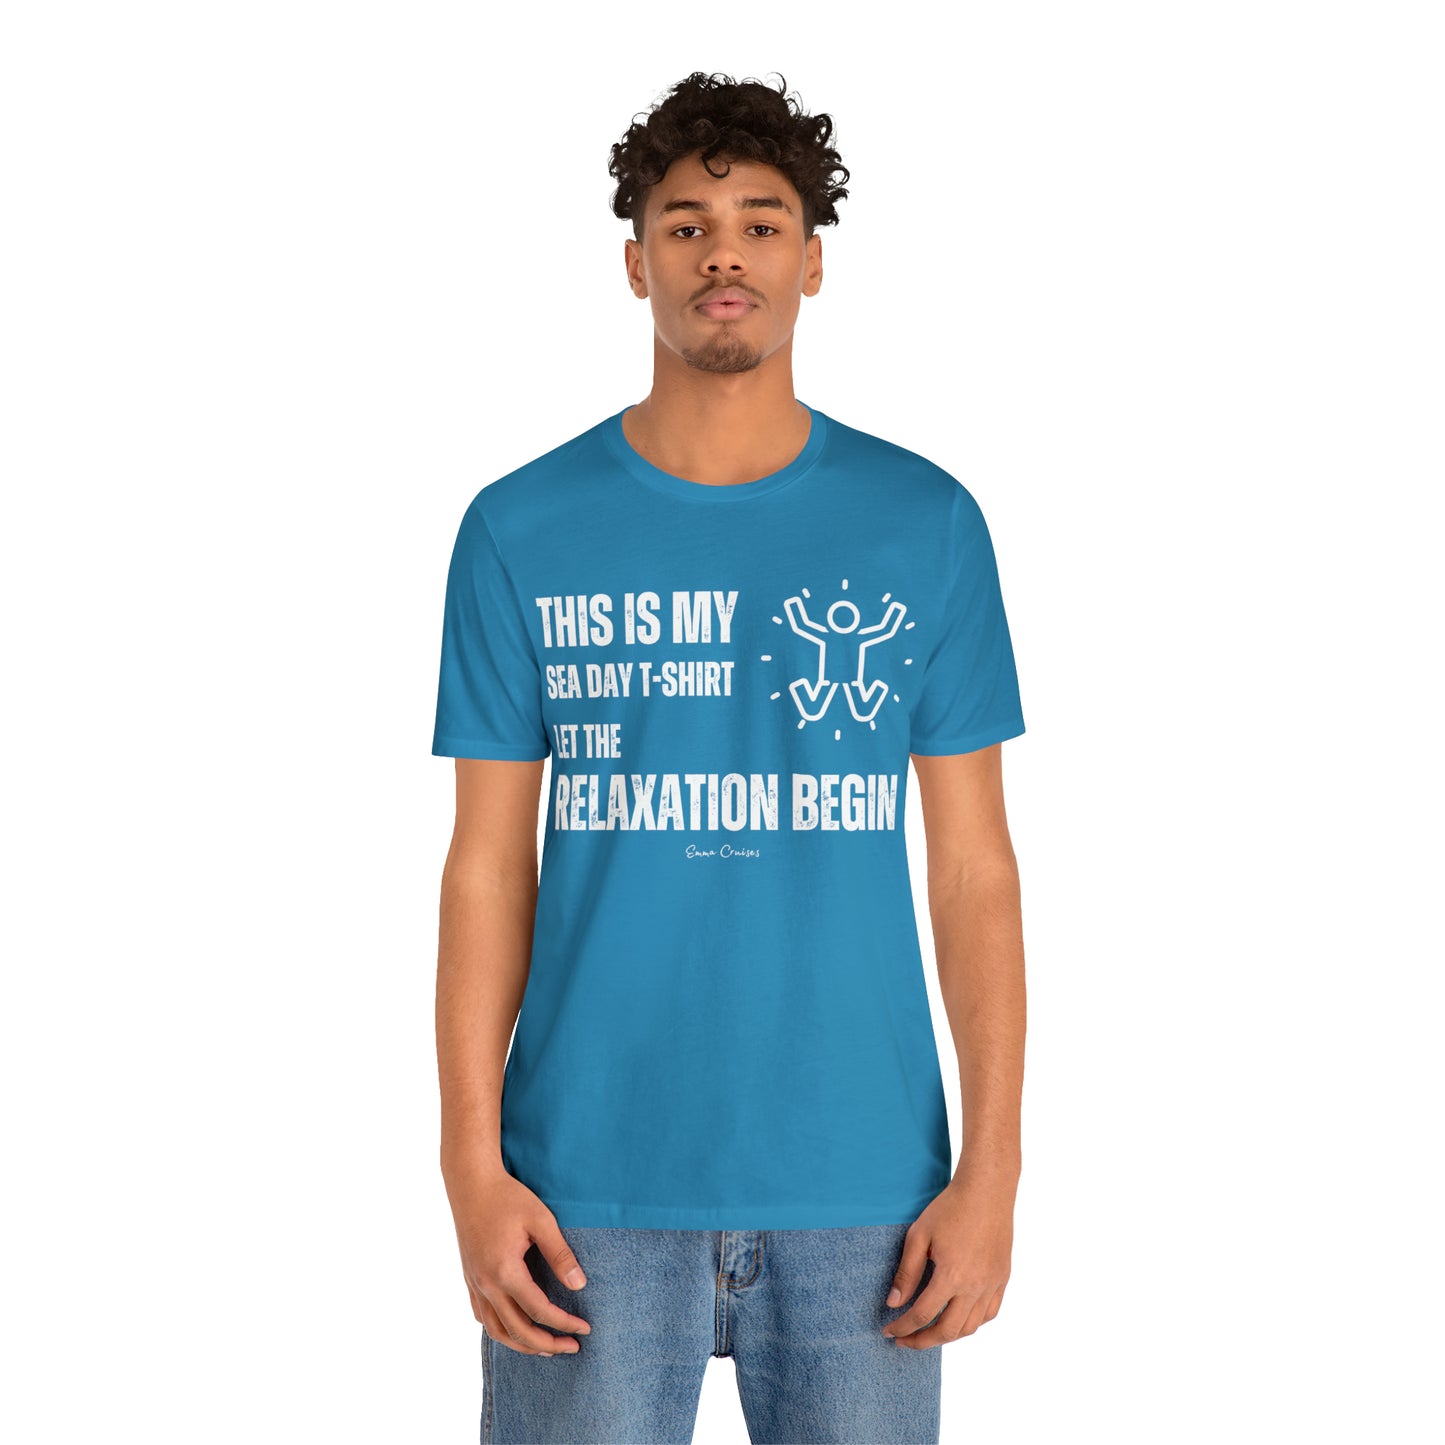 Das ist mein Sea Day T-Shirt - UNISEX T-Shirt